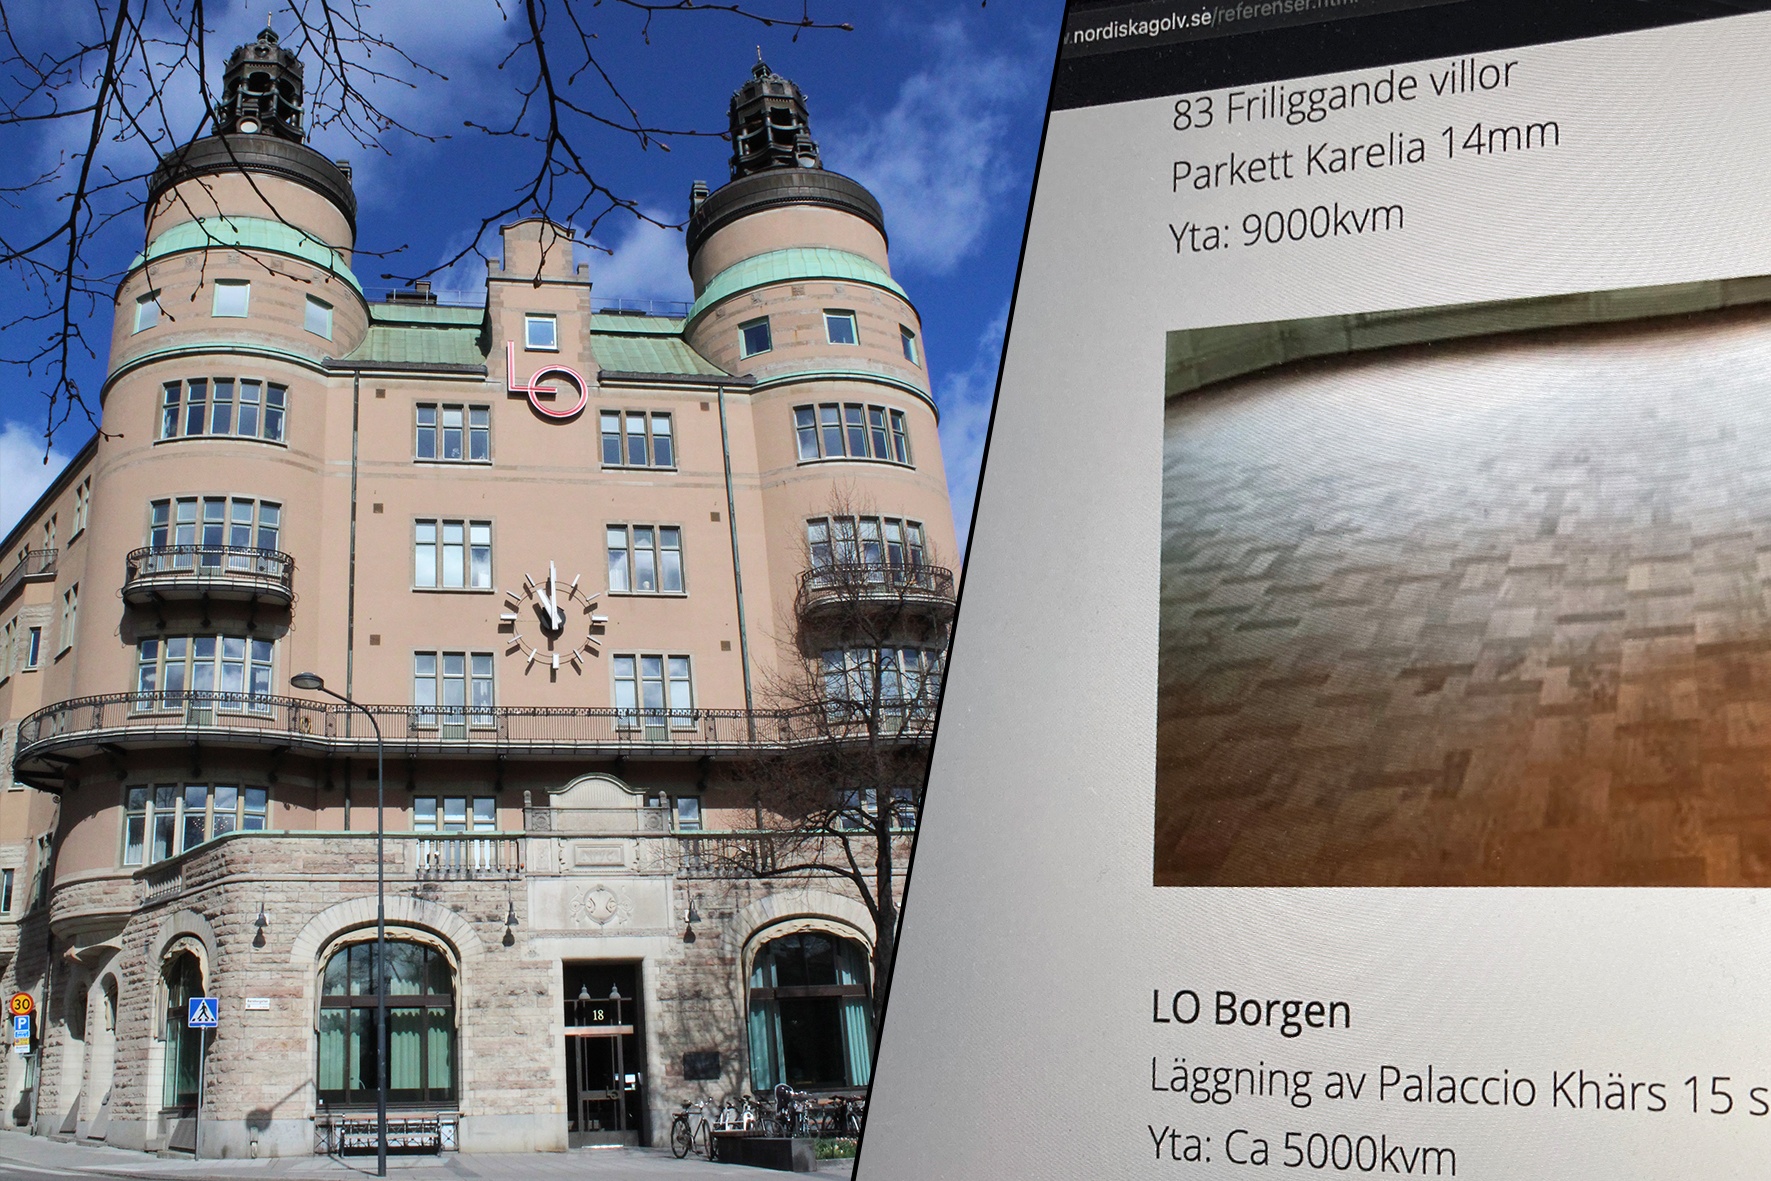 LO-borgen och en bild på Nordiska golvs referenssida